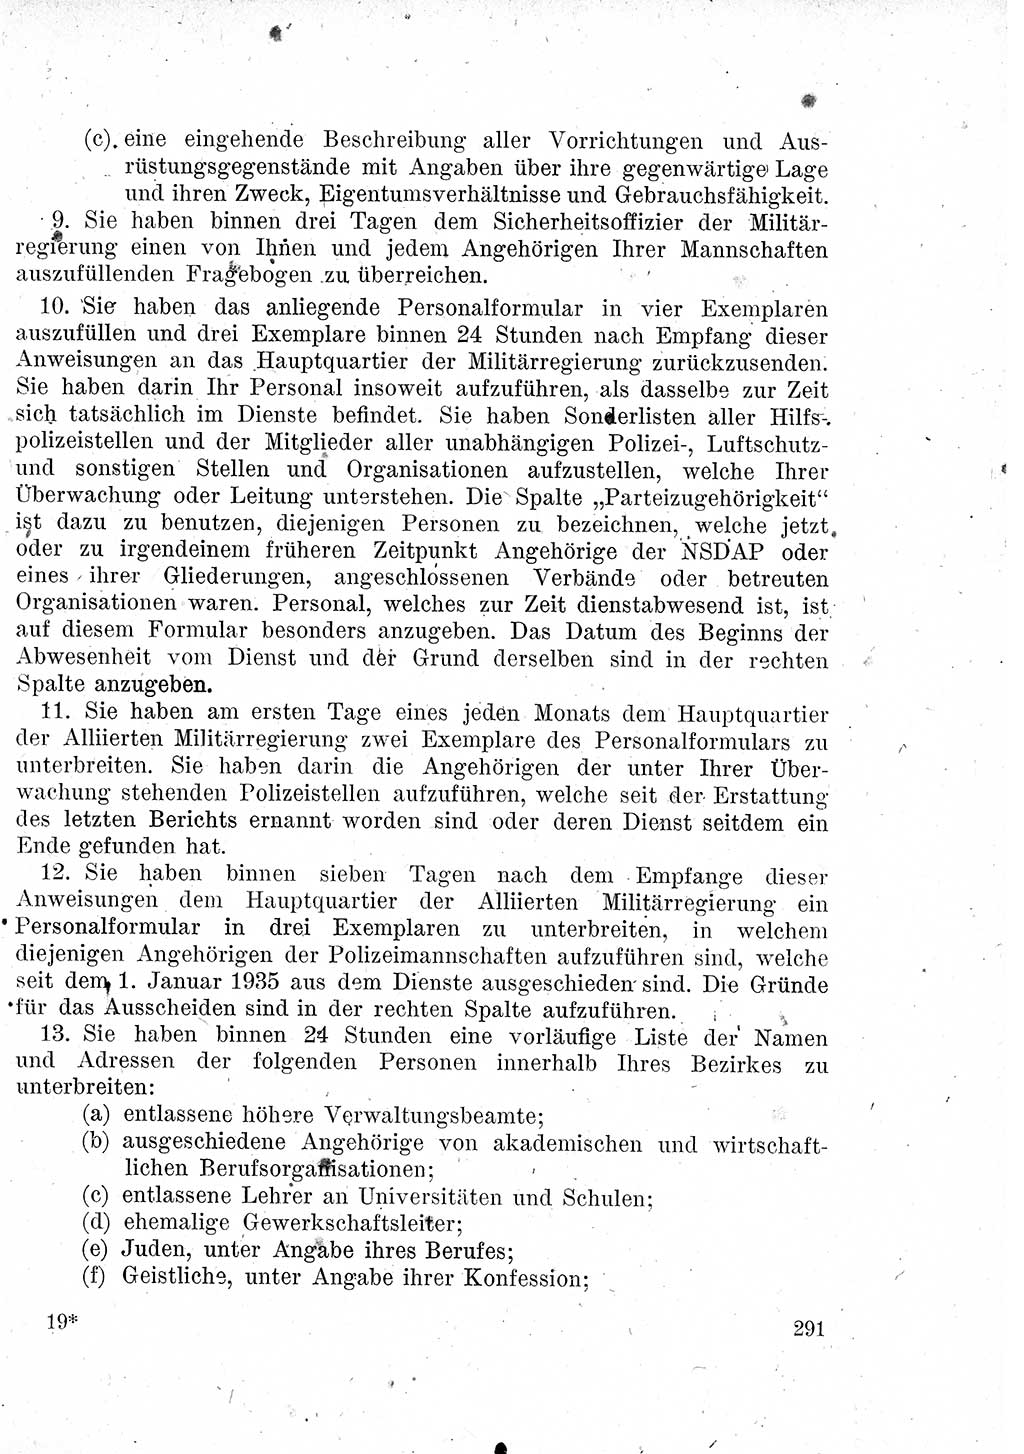 Das Recht der Besatzungsmacht (Deutschland), Proklamationen, Deklerationen, Verordnungen, Gesetze und Bekanntmachungen 1947, Seite 291 (R. Bes. Dtl. 1947, S. 291)